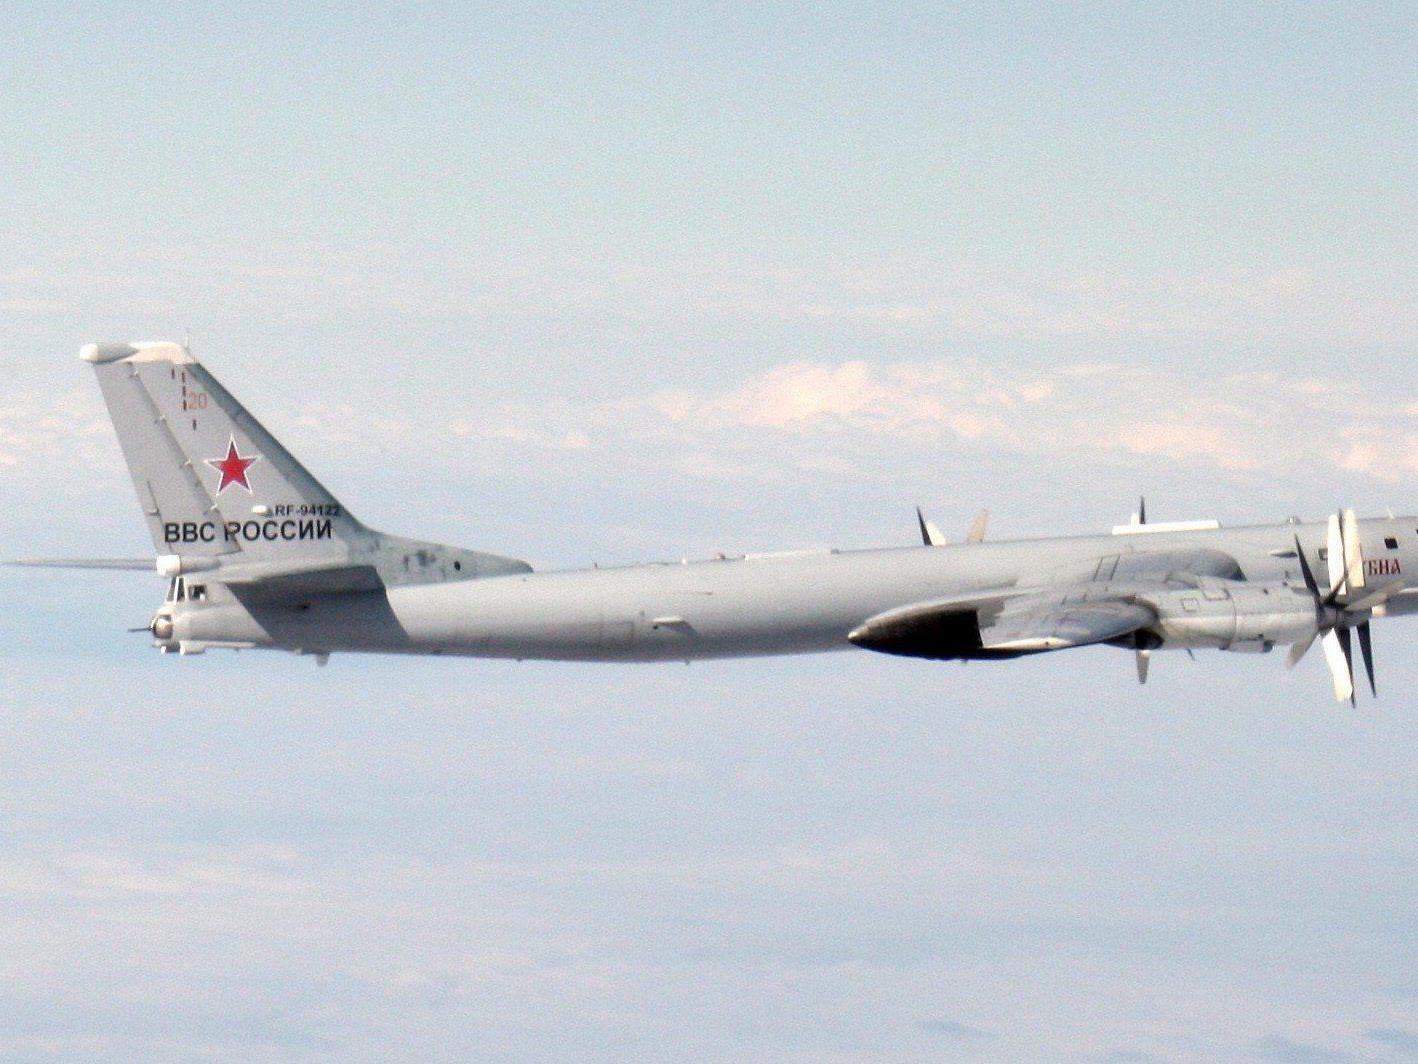 Bomber, U-Boote und Raketen - Moskau zeigt militärische Stärke